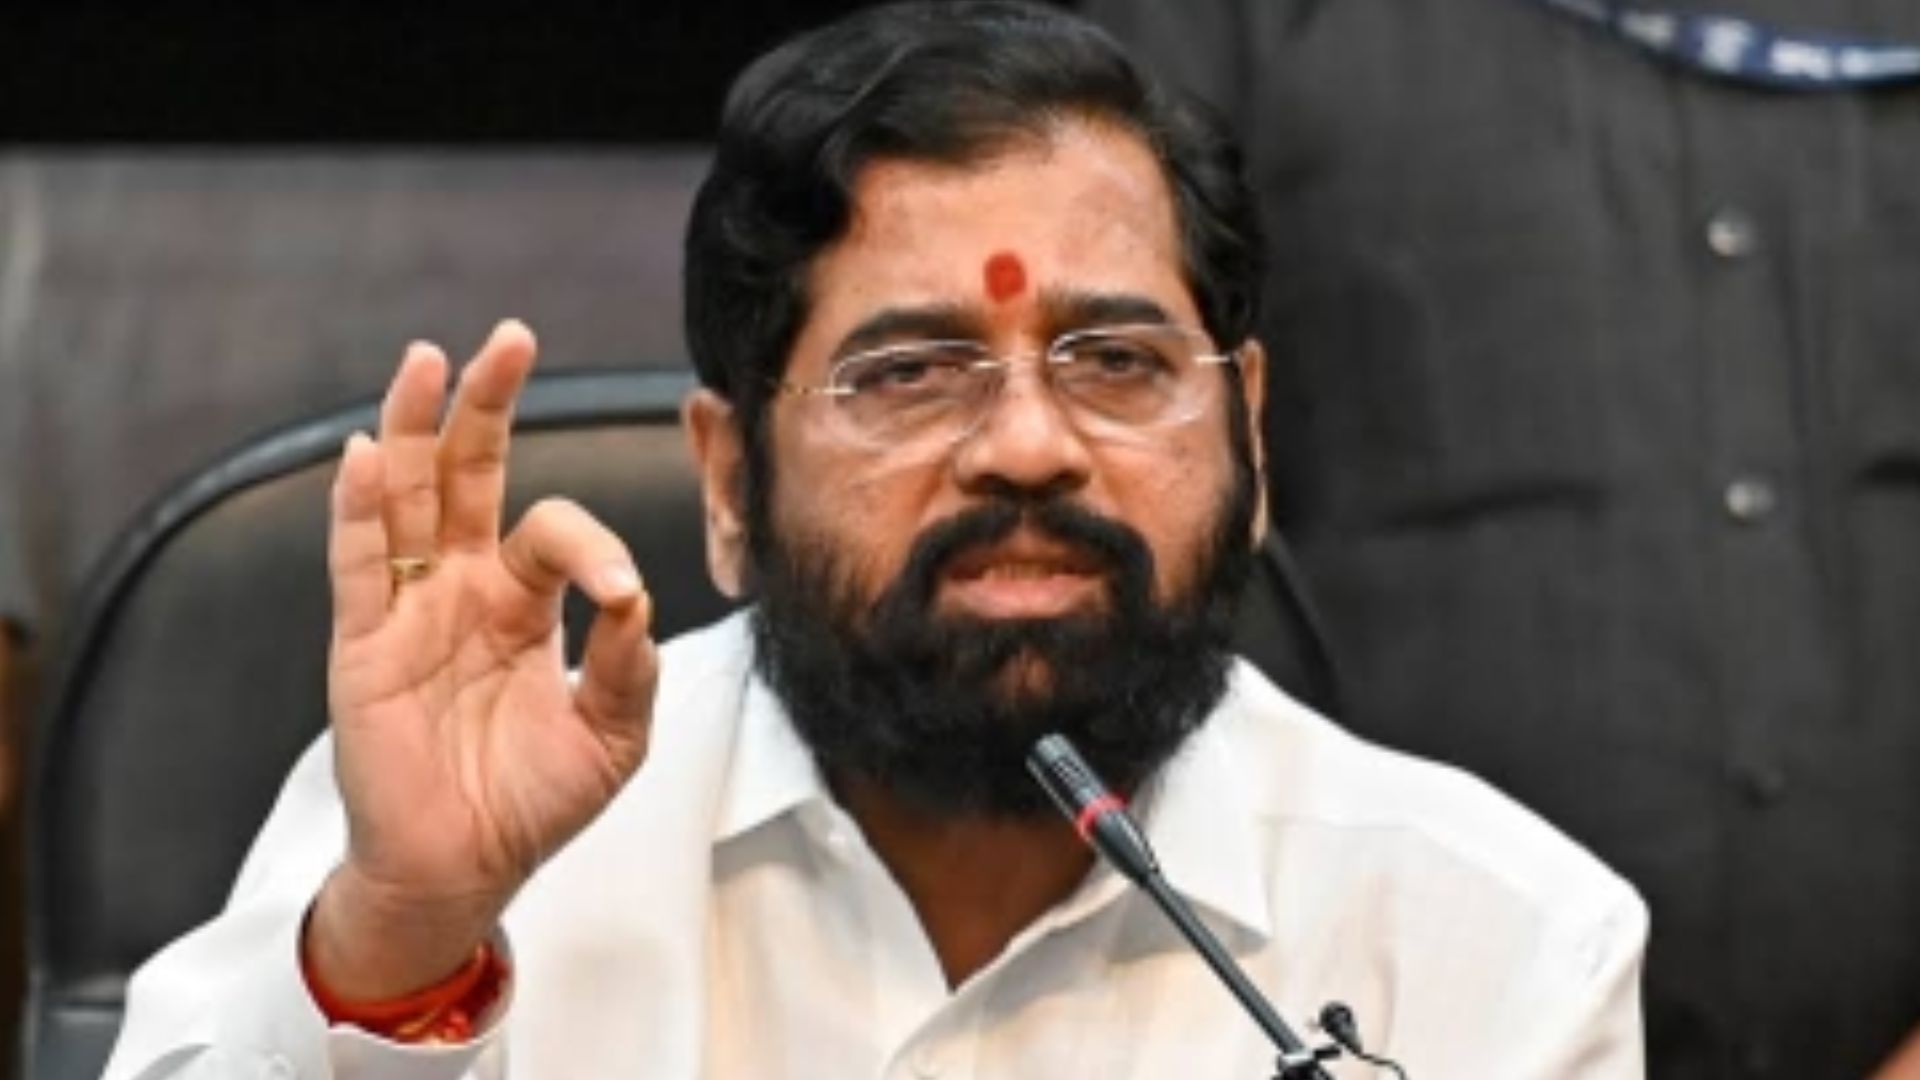 'महाराष्ट्र में 45 लोकसभा सीट जीतेगा सत्तारूढ़ गठबंधन', मुख्यमंत्री शिंदे का दावा